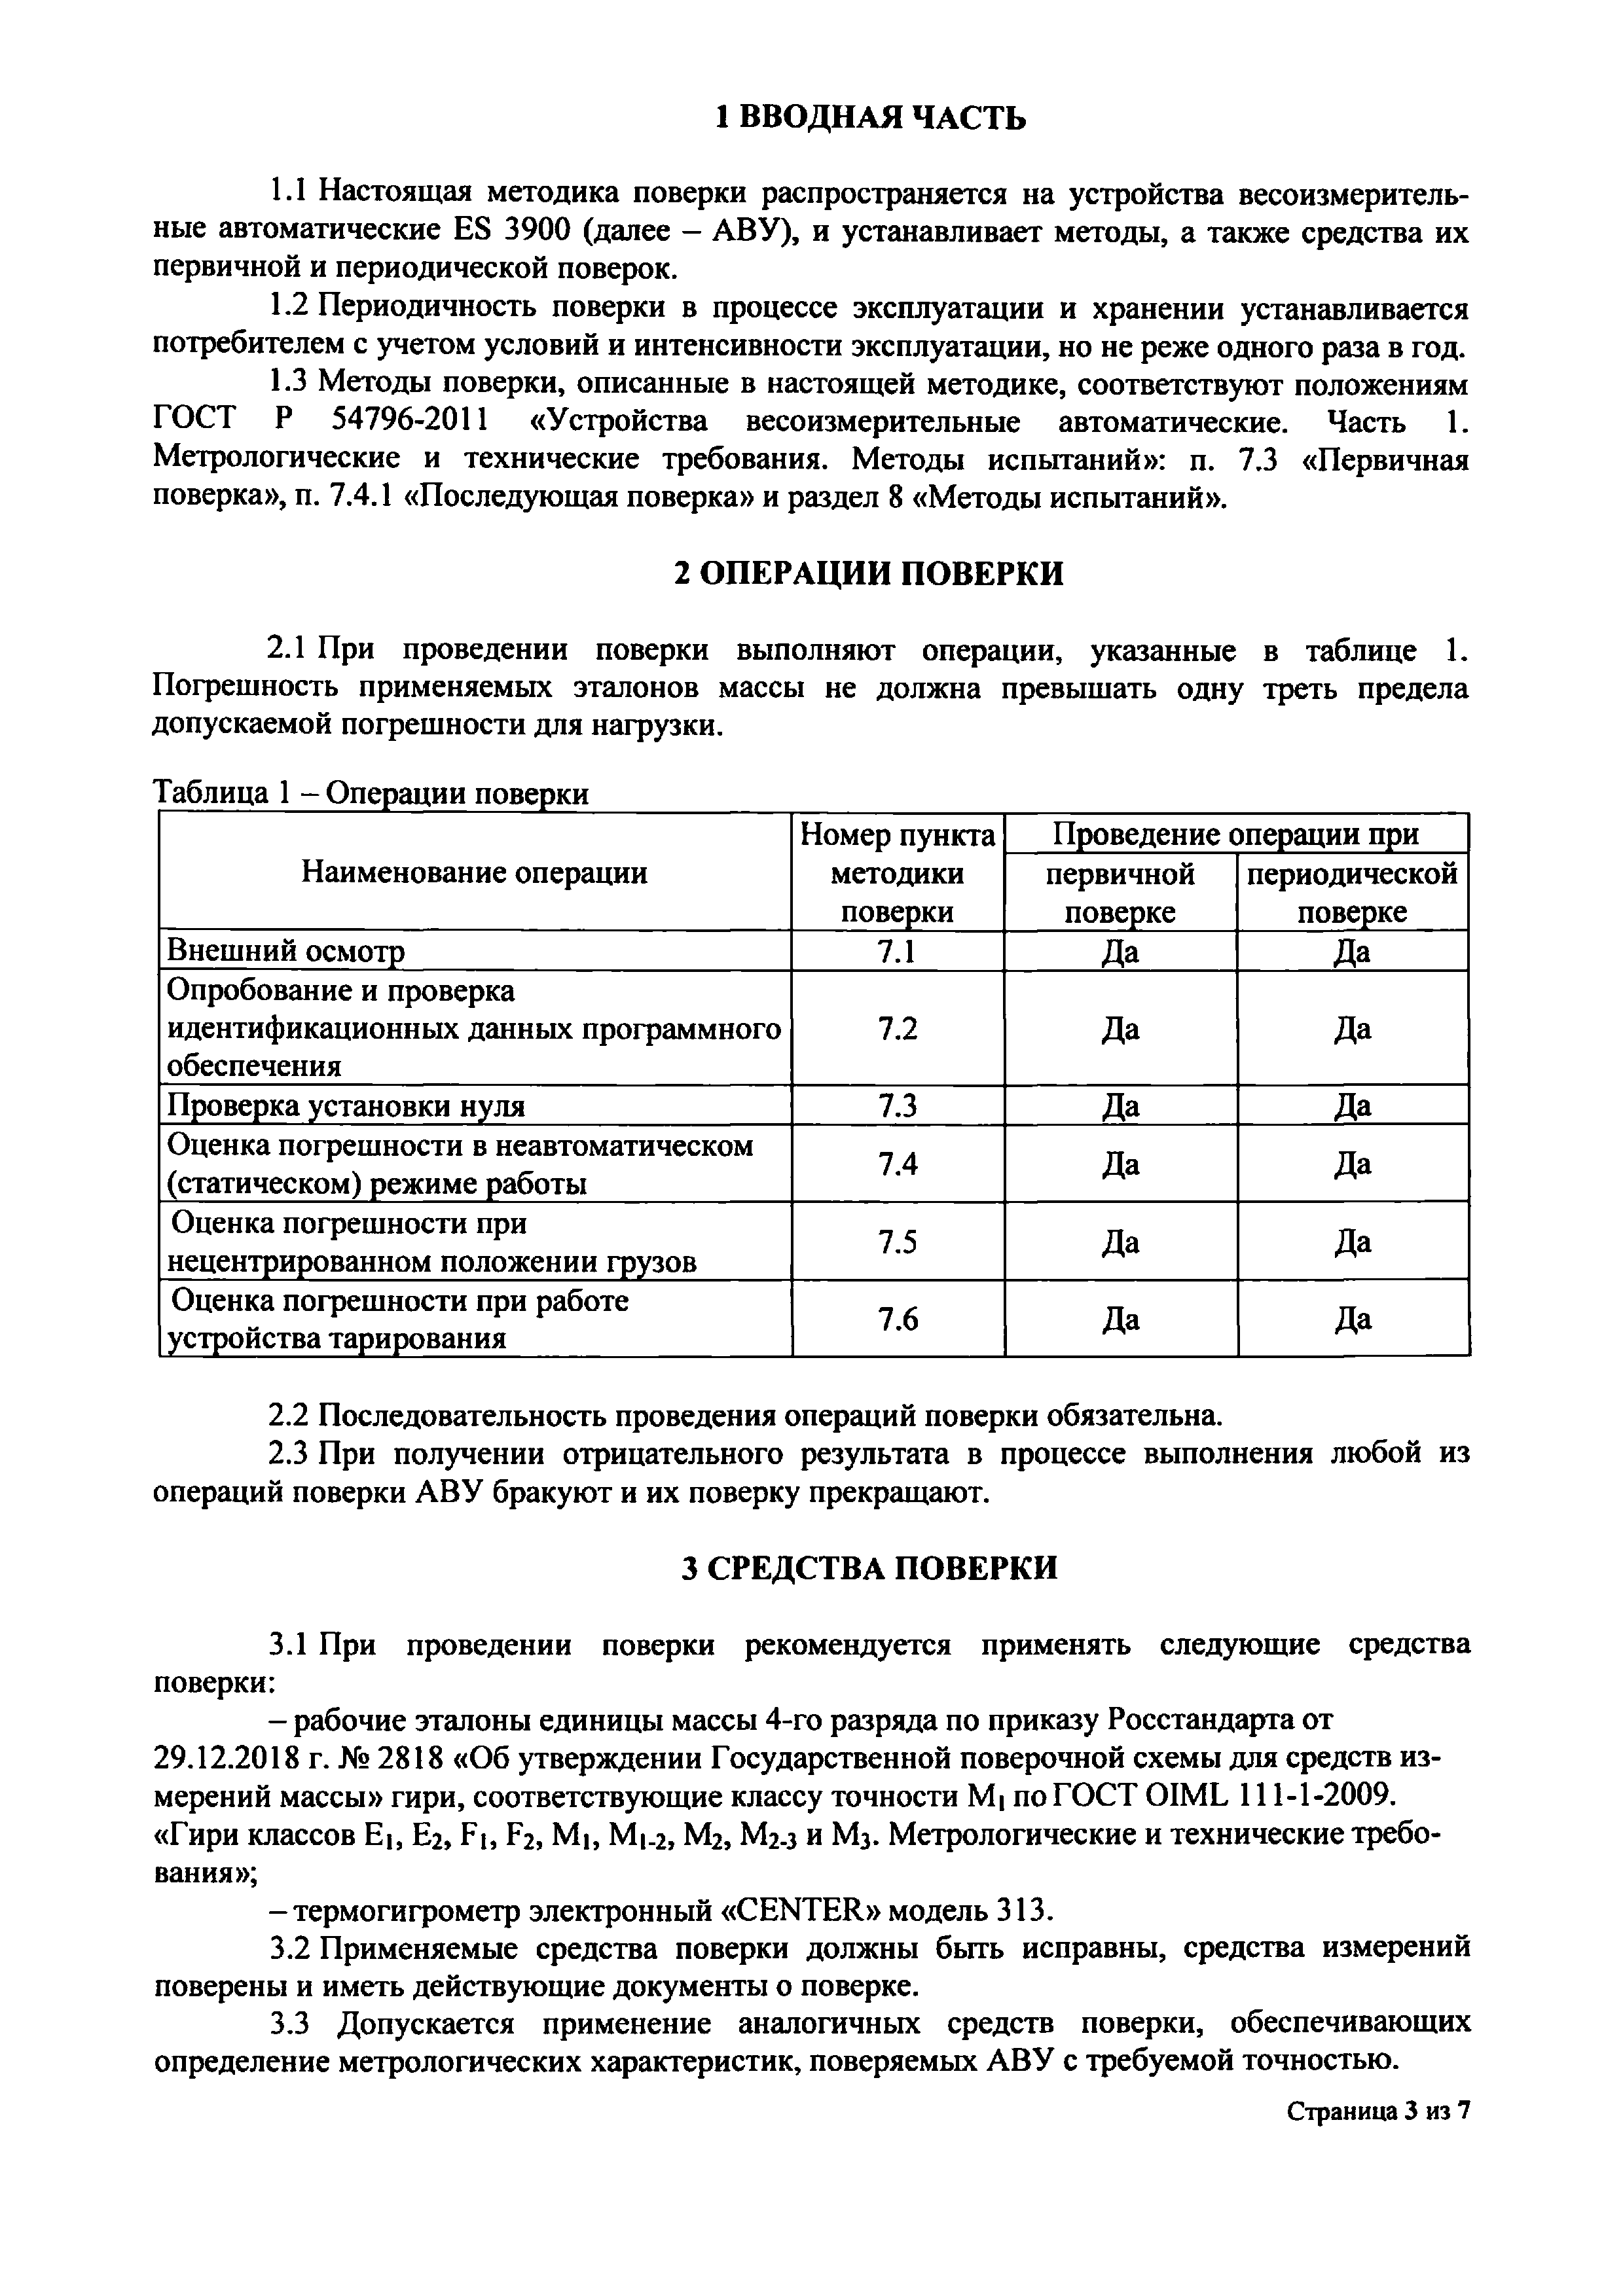 ИЦРМ-МП-220-19